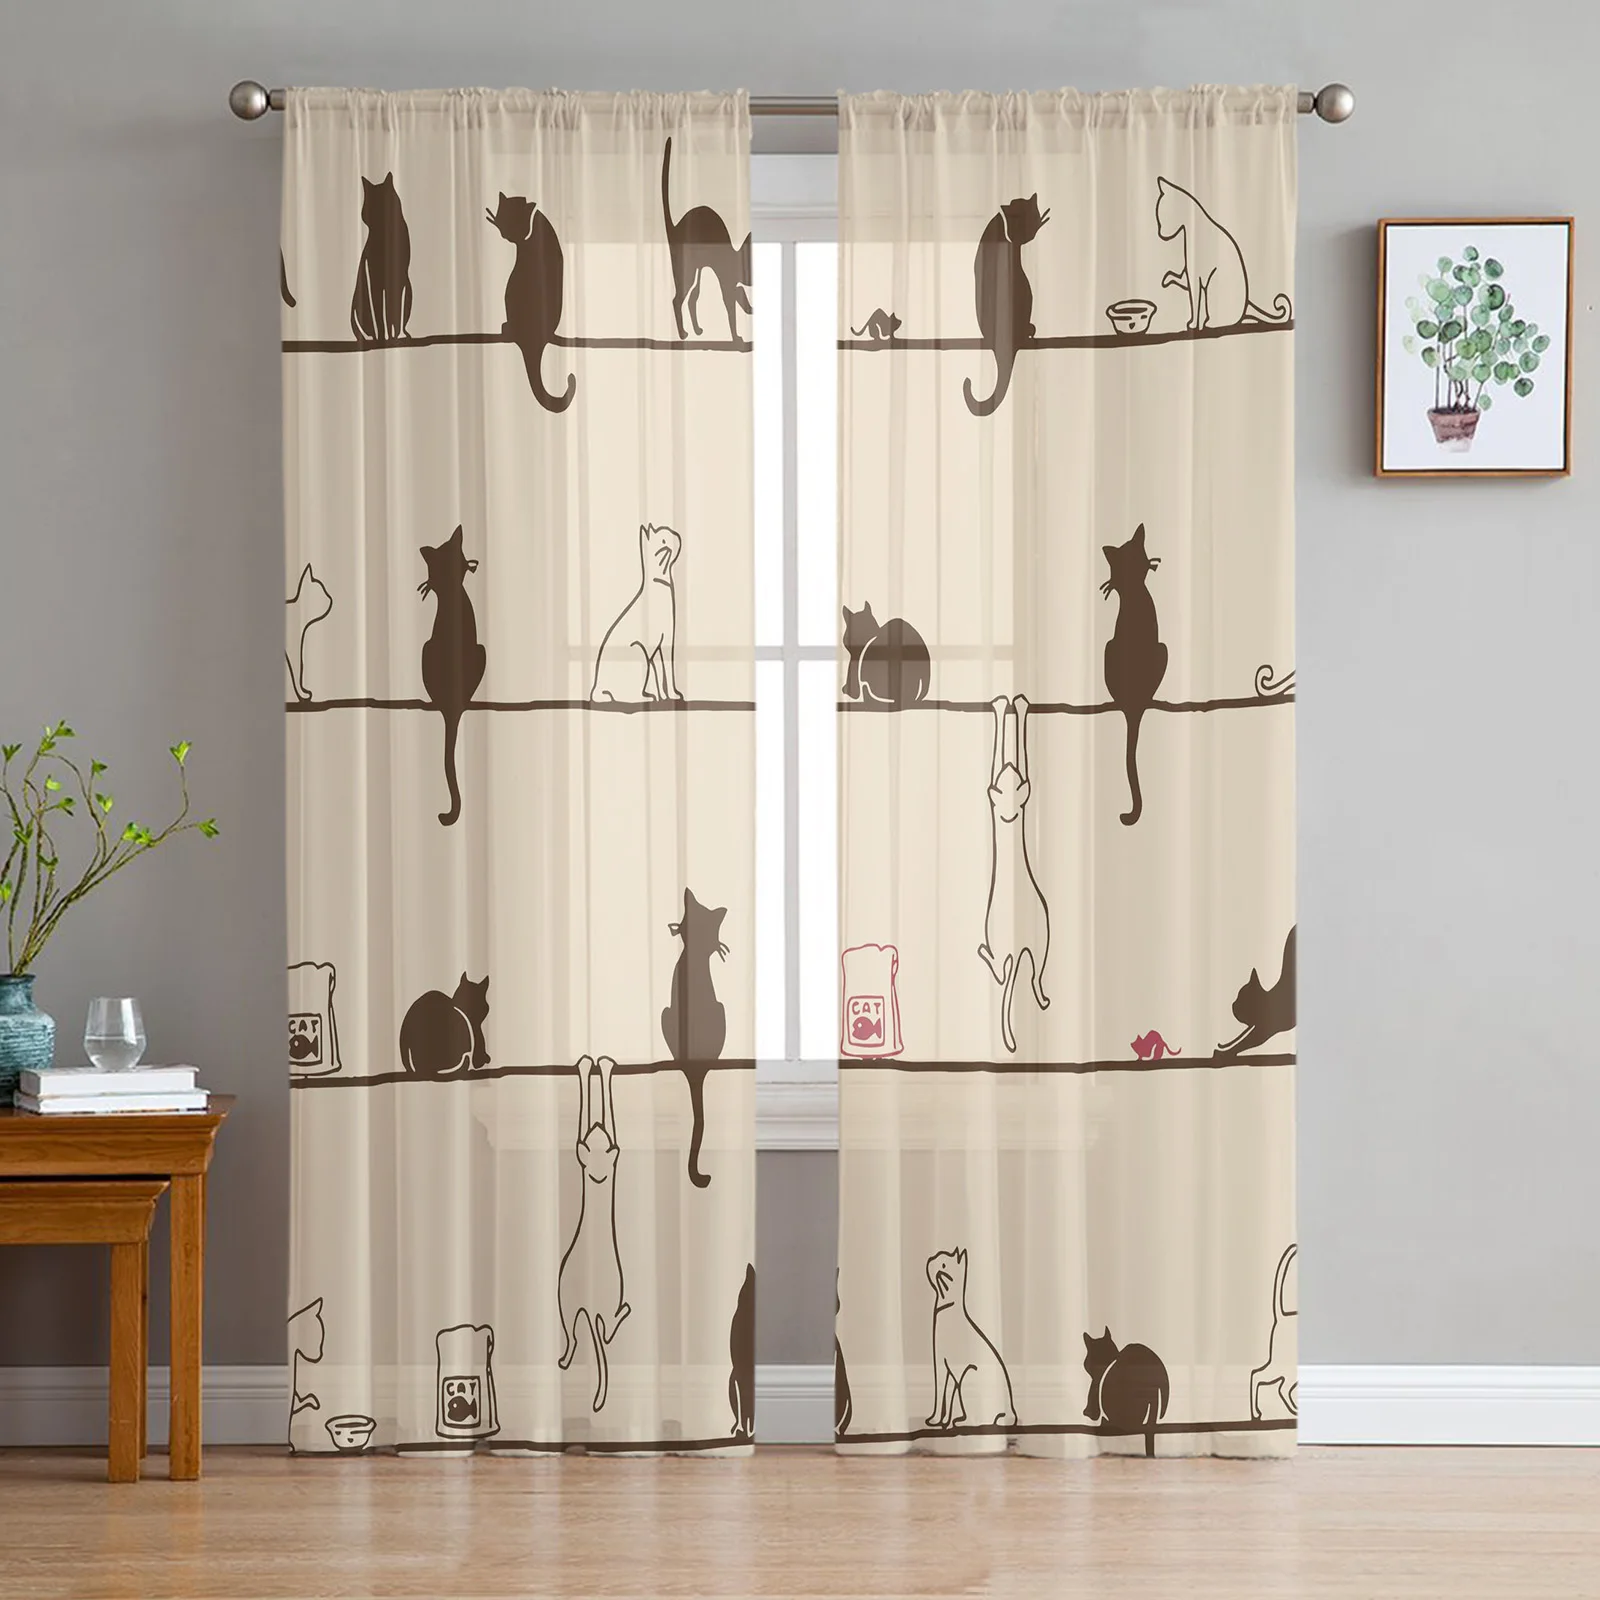 

Cortinas transparentes de tul para sala de estar, cortinas de gasa con diseño de ratón y gato para dormitorio, cocina, ventanas